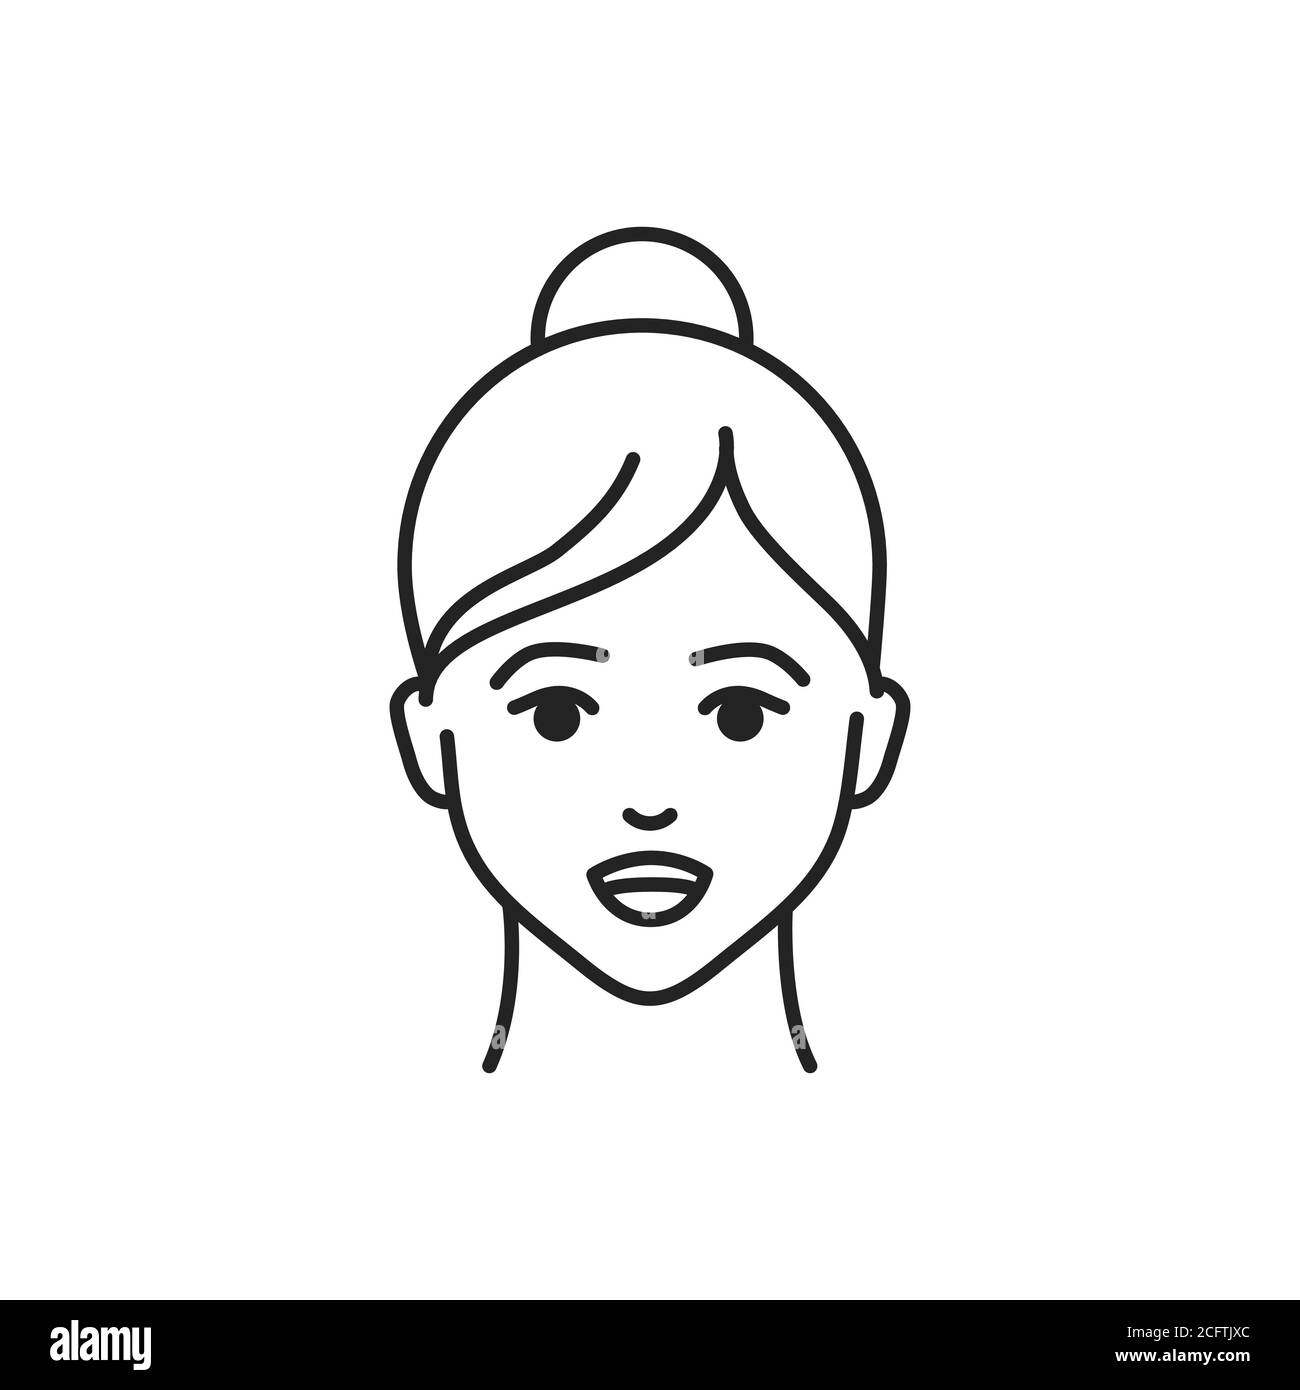 Menschliches Gefühl Bewunderung Linie schwarz Symbol. Gesicht eines jungen Mädchens Darstellung Emotion Skizze Element. Niedlichen Charakter auf weißem Hintergrund. Stock Vektor